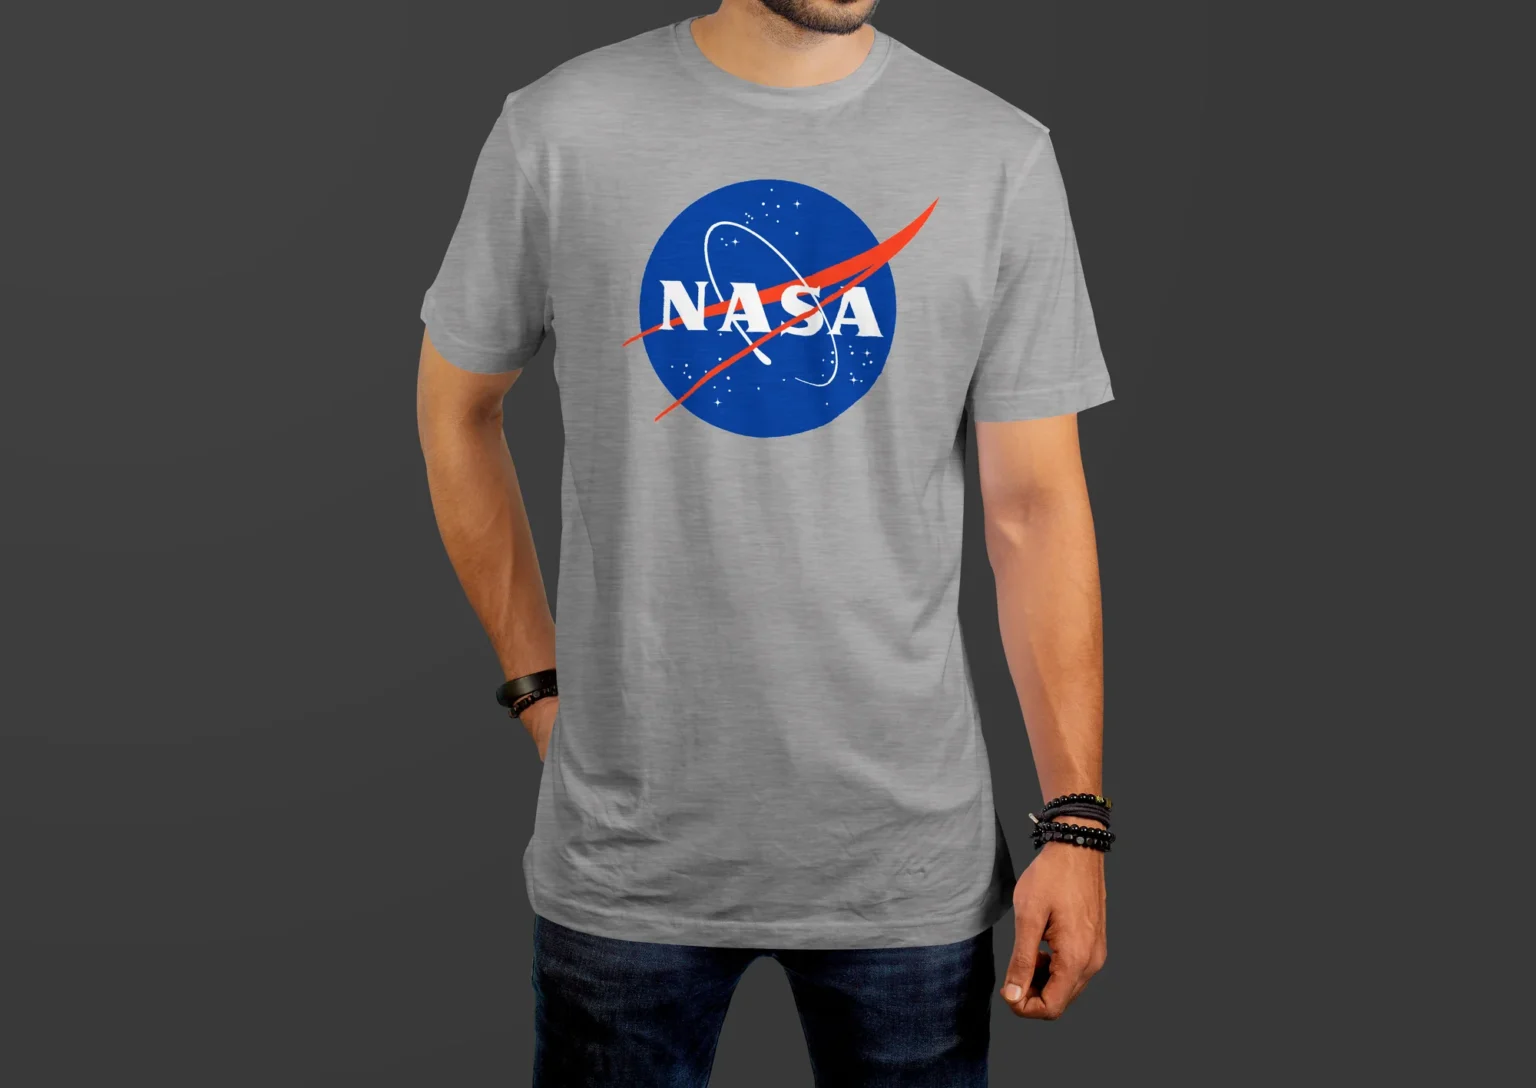 Nasa-T-shirt